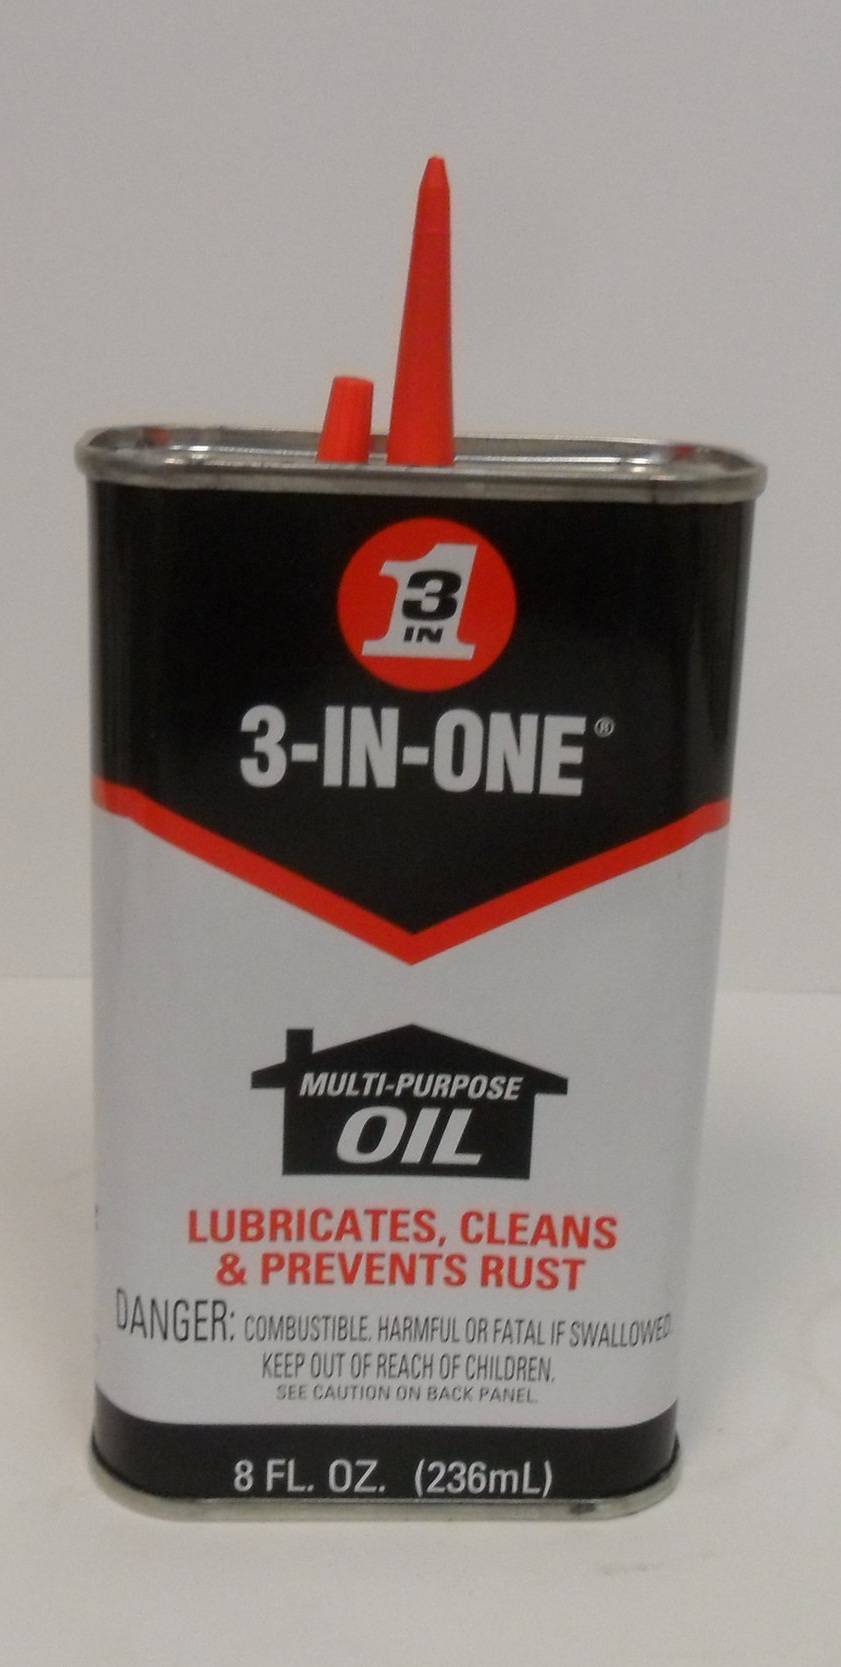 3-IN-ONE Multi-Purpose Oil, 3oz